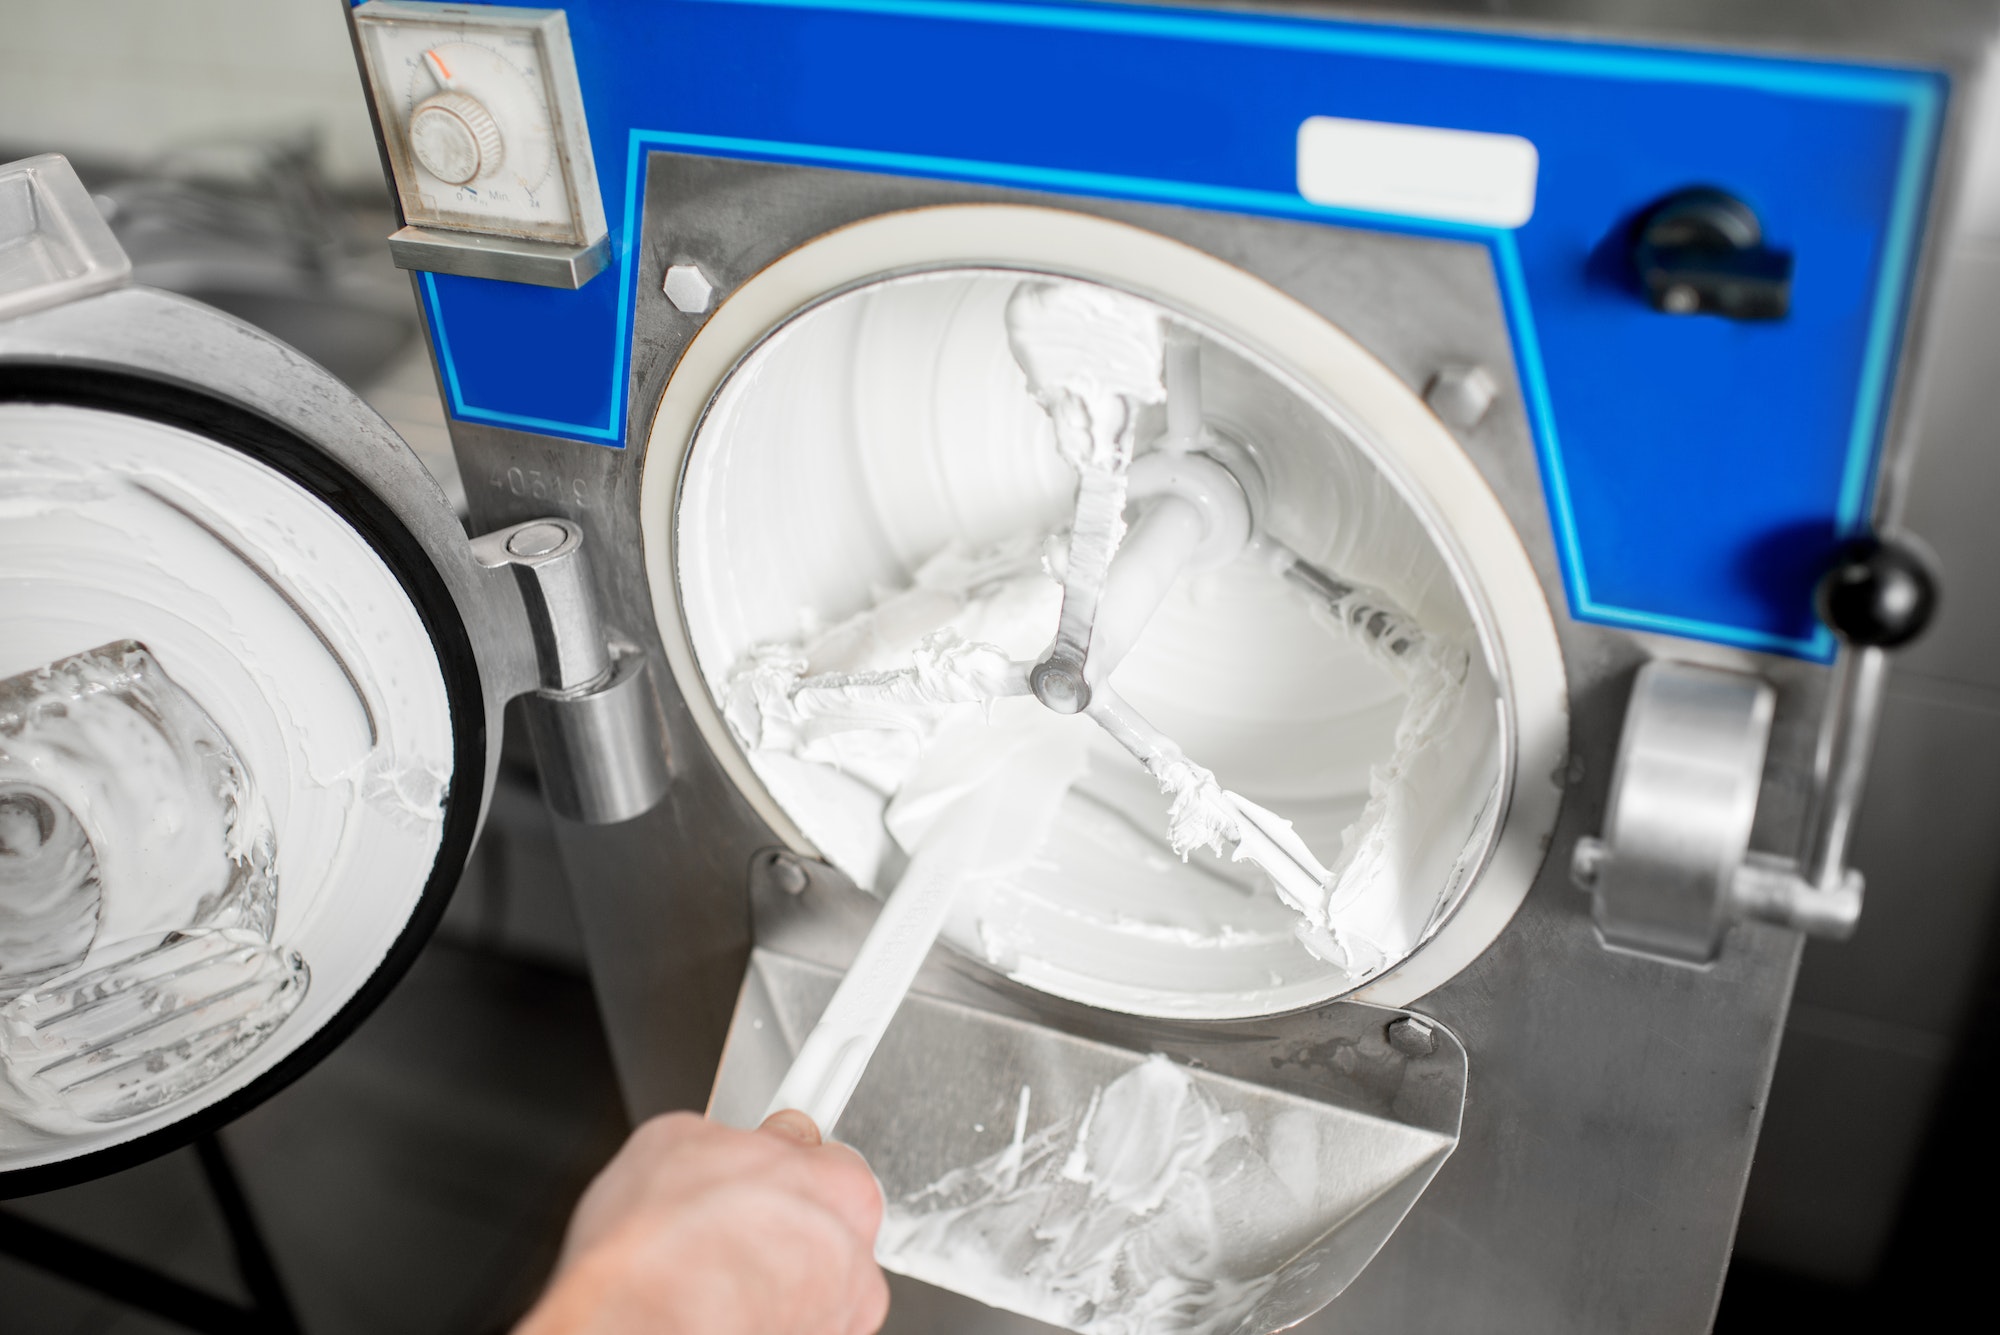 Cleaning ice cream maker machine